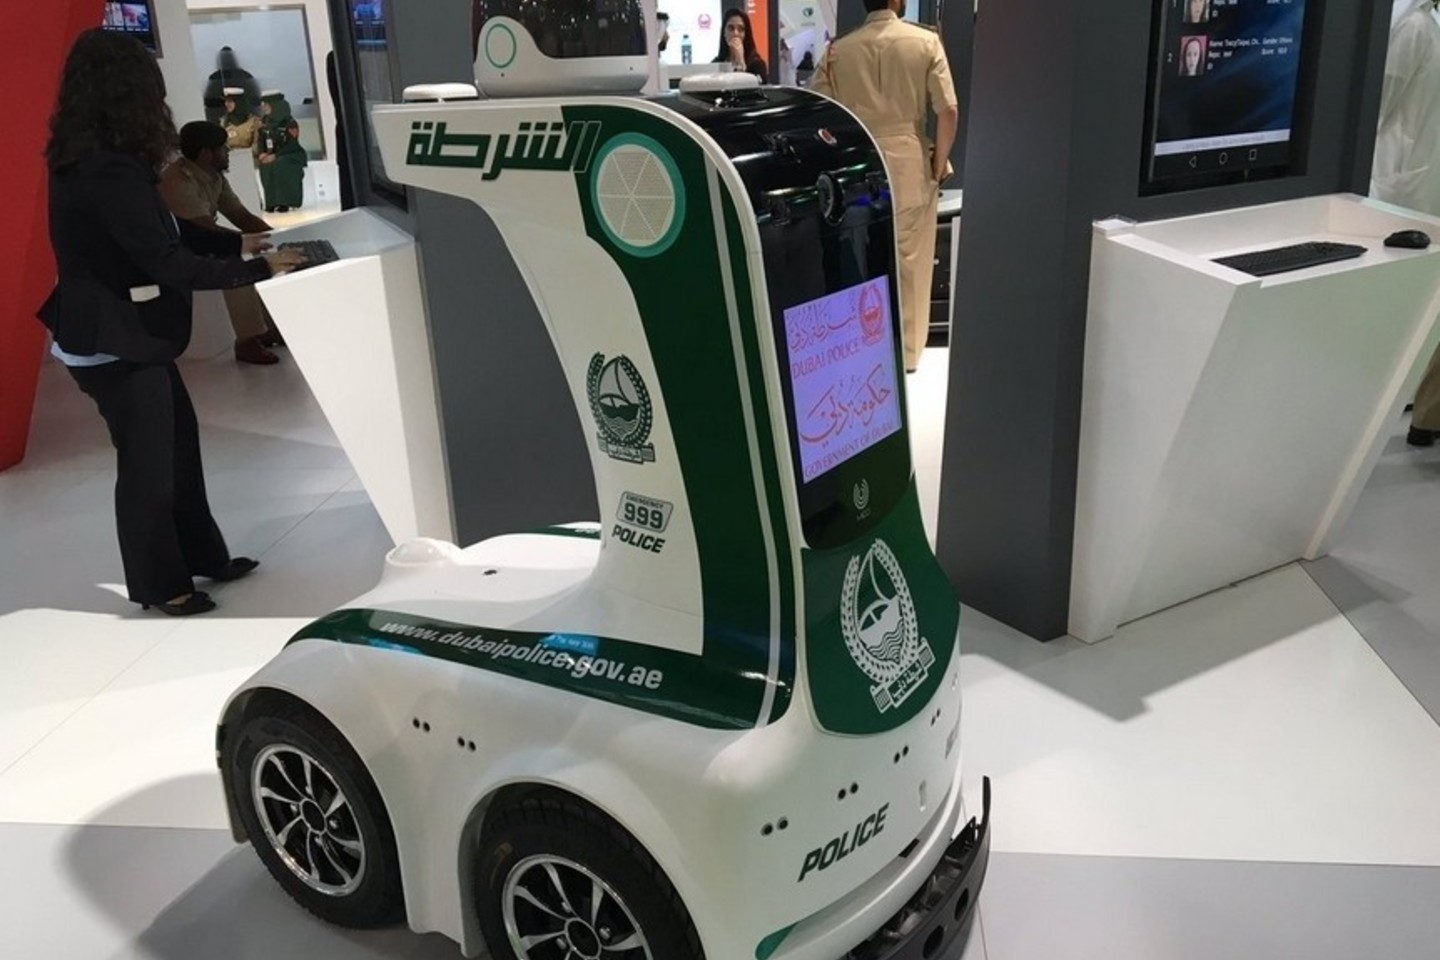 2017 metais Dubajuje pradės dirbti robotai policininkai.<br>„Twitter“ nuotr.